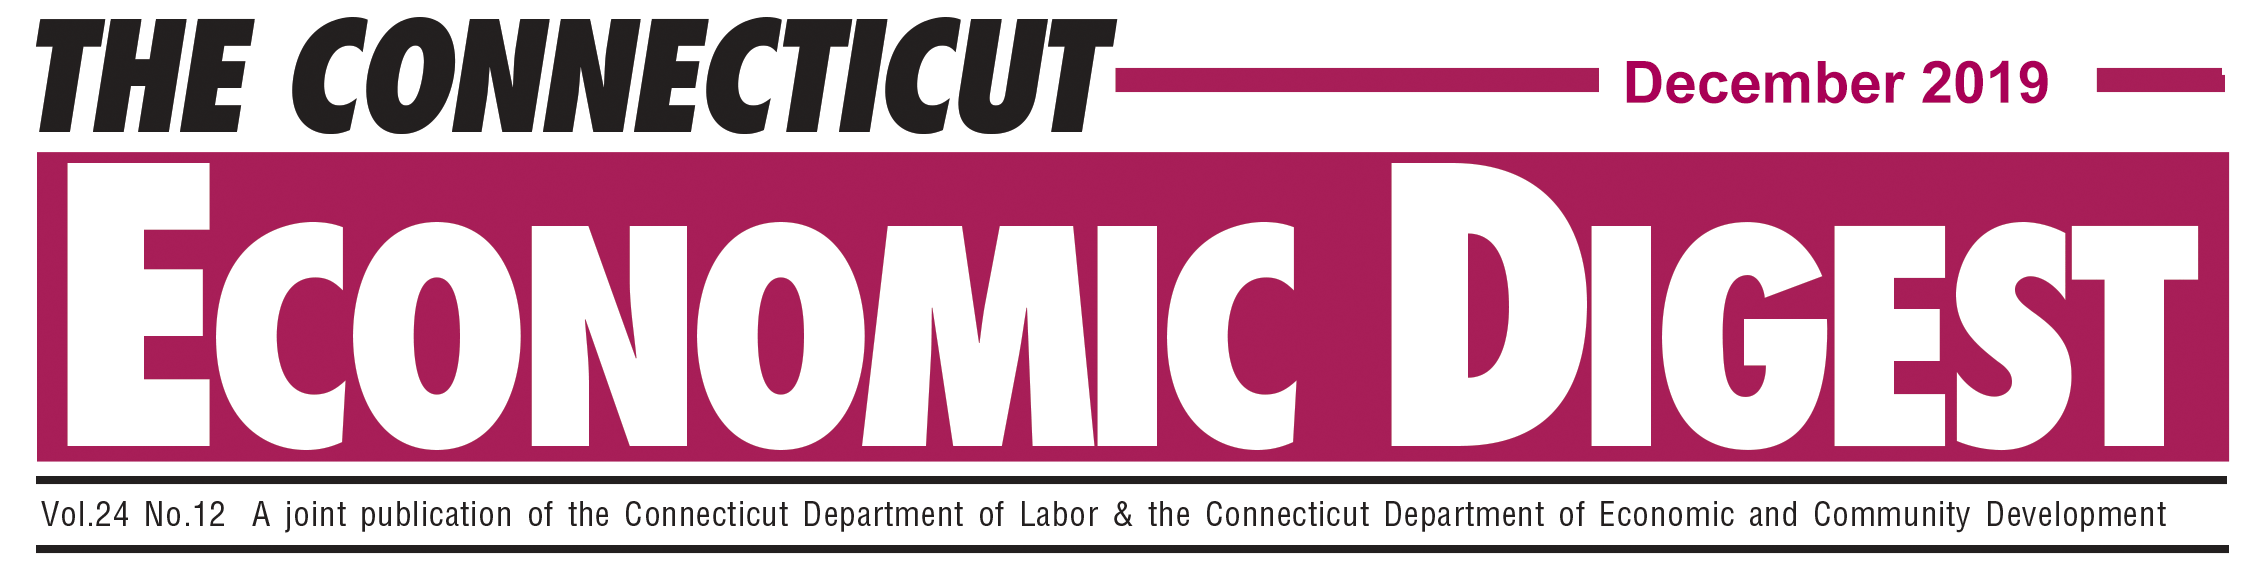 December 2019 Connecticut Economic Digest